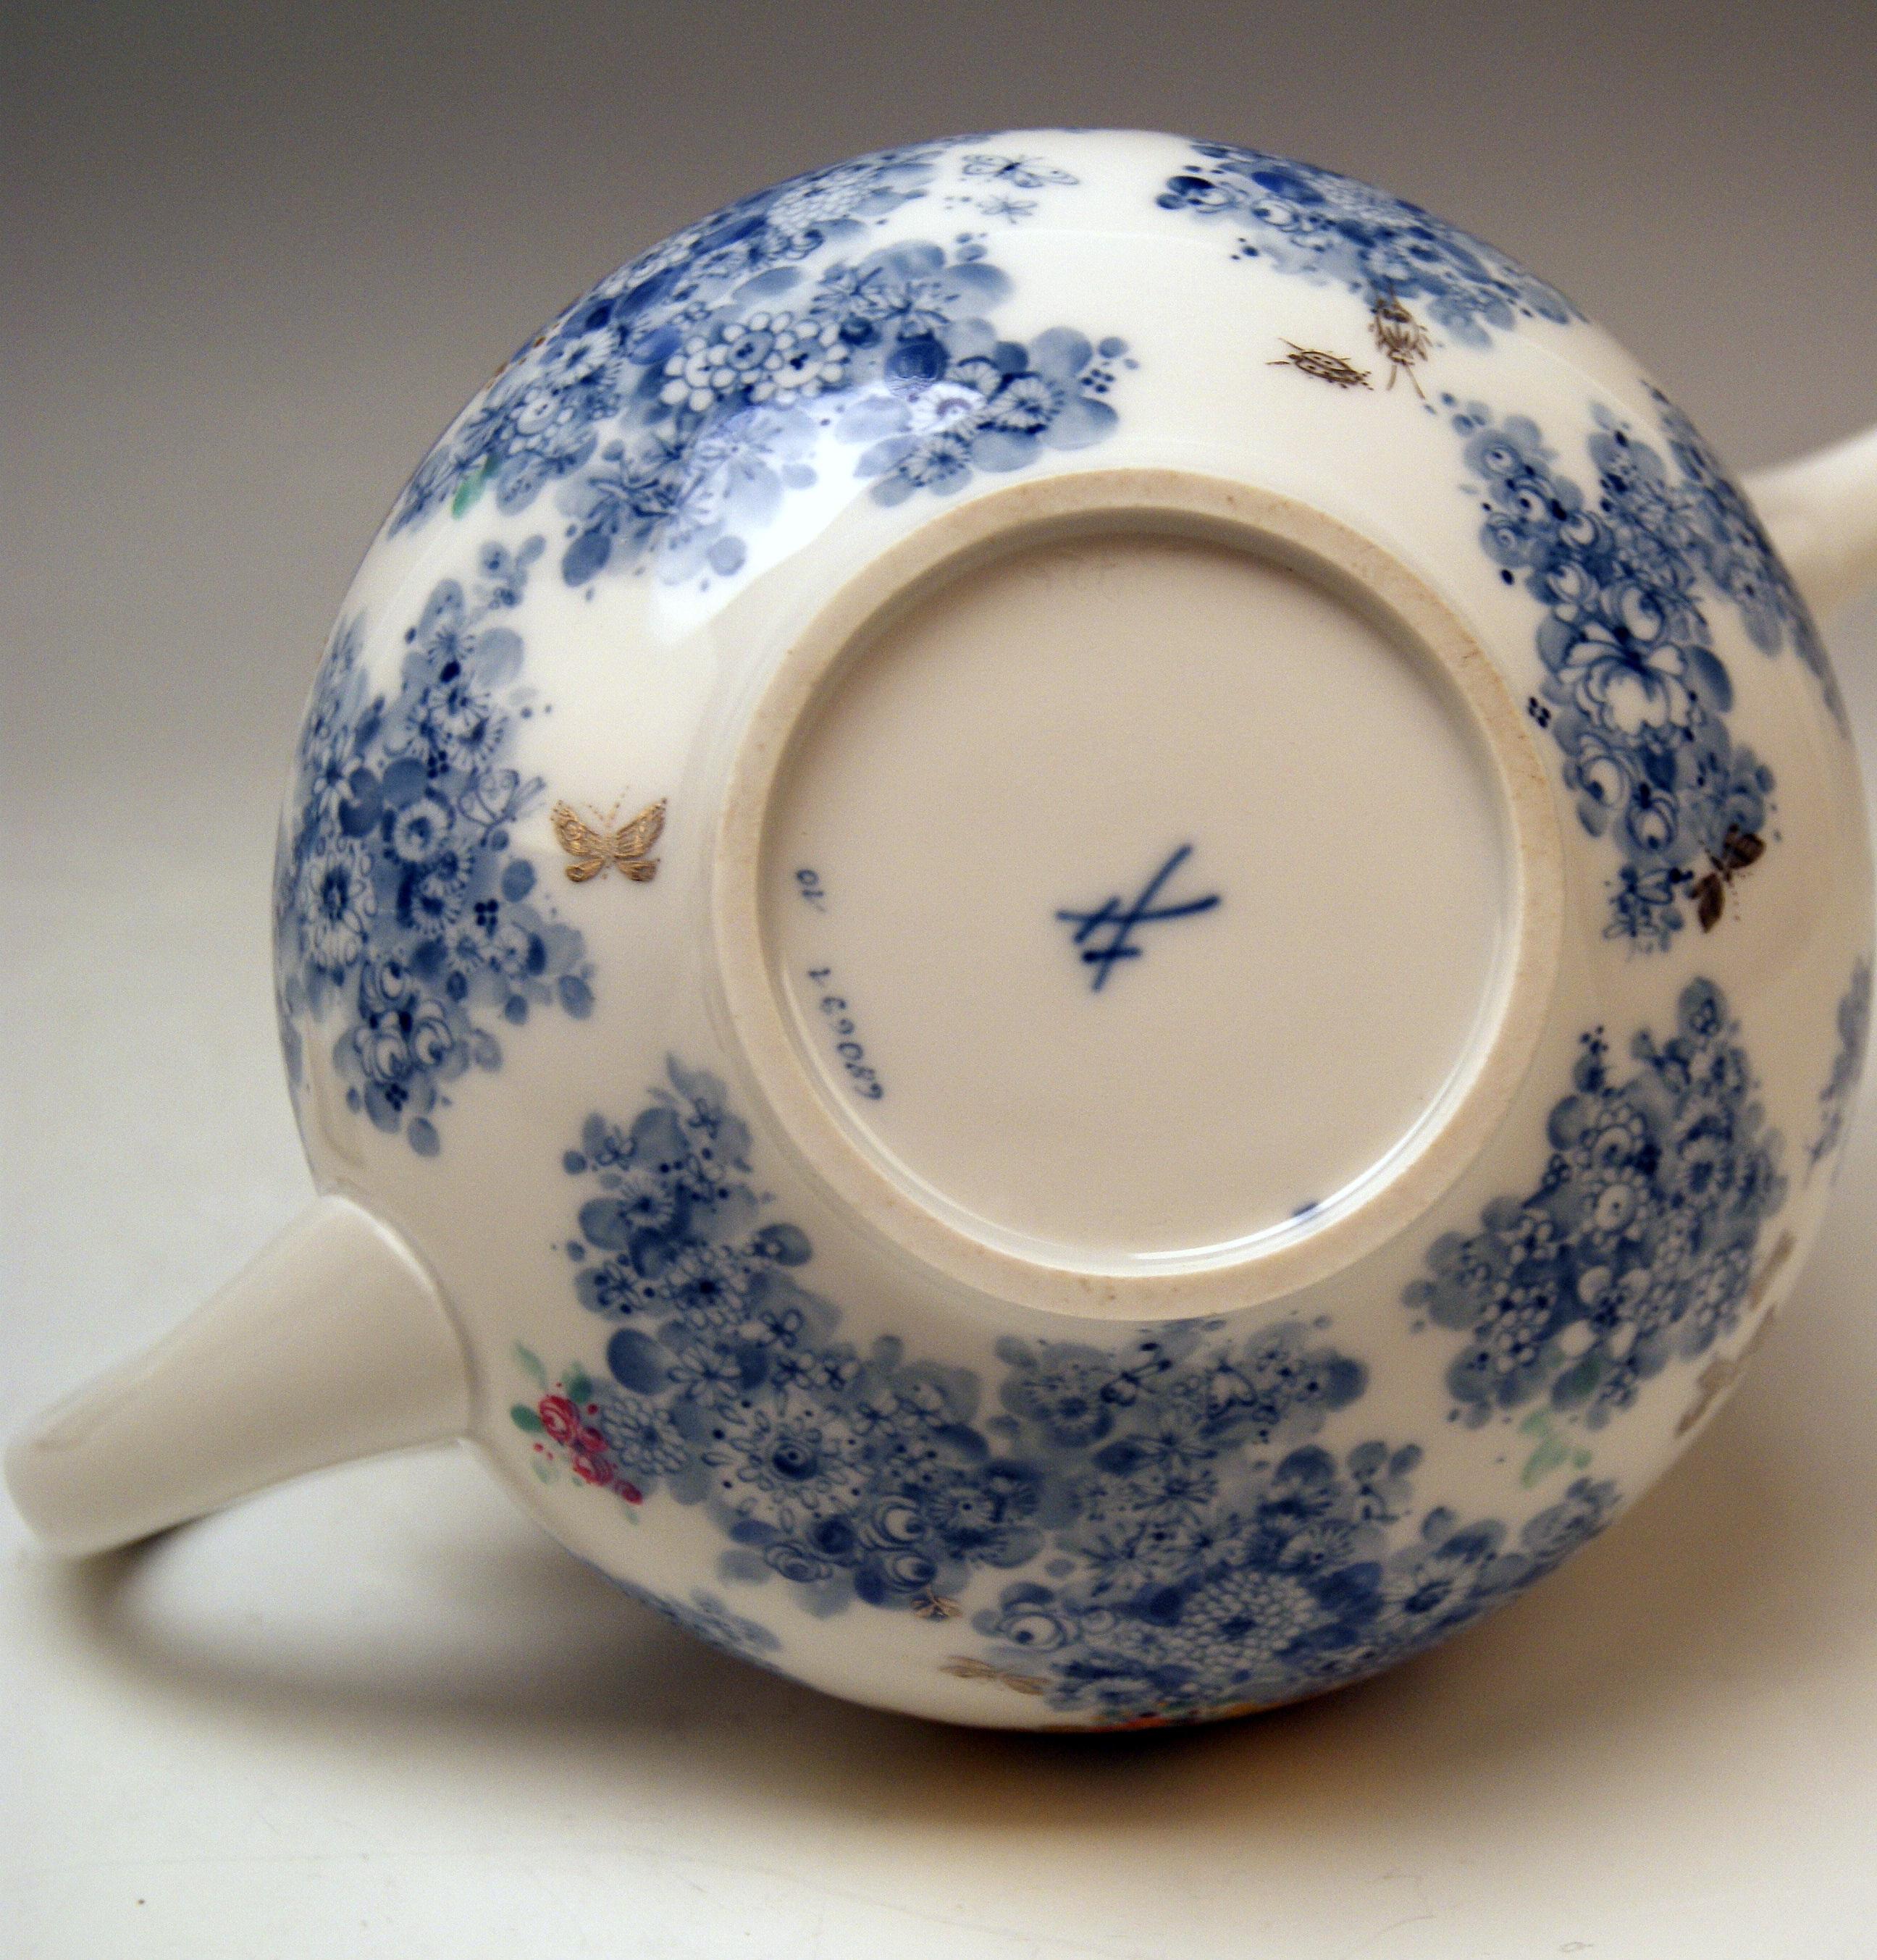 Hand-Painted Meissen Tea Pot Decor 680691 Summer Night's Dream by Heinz Werner